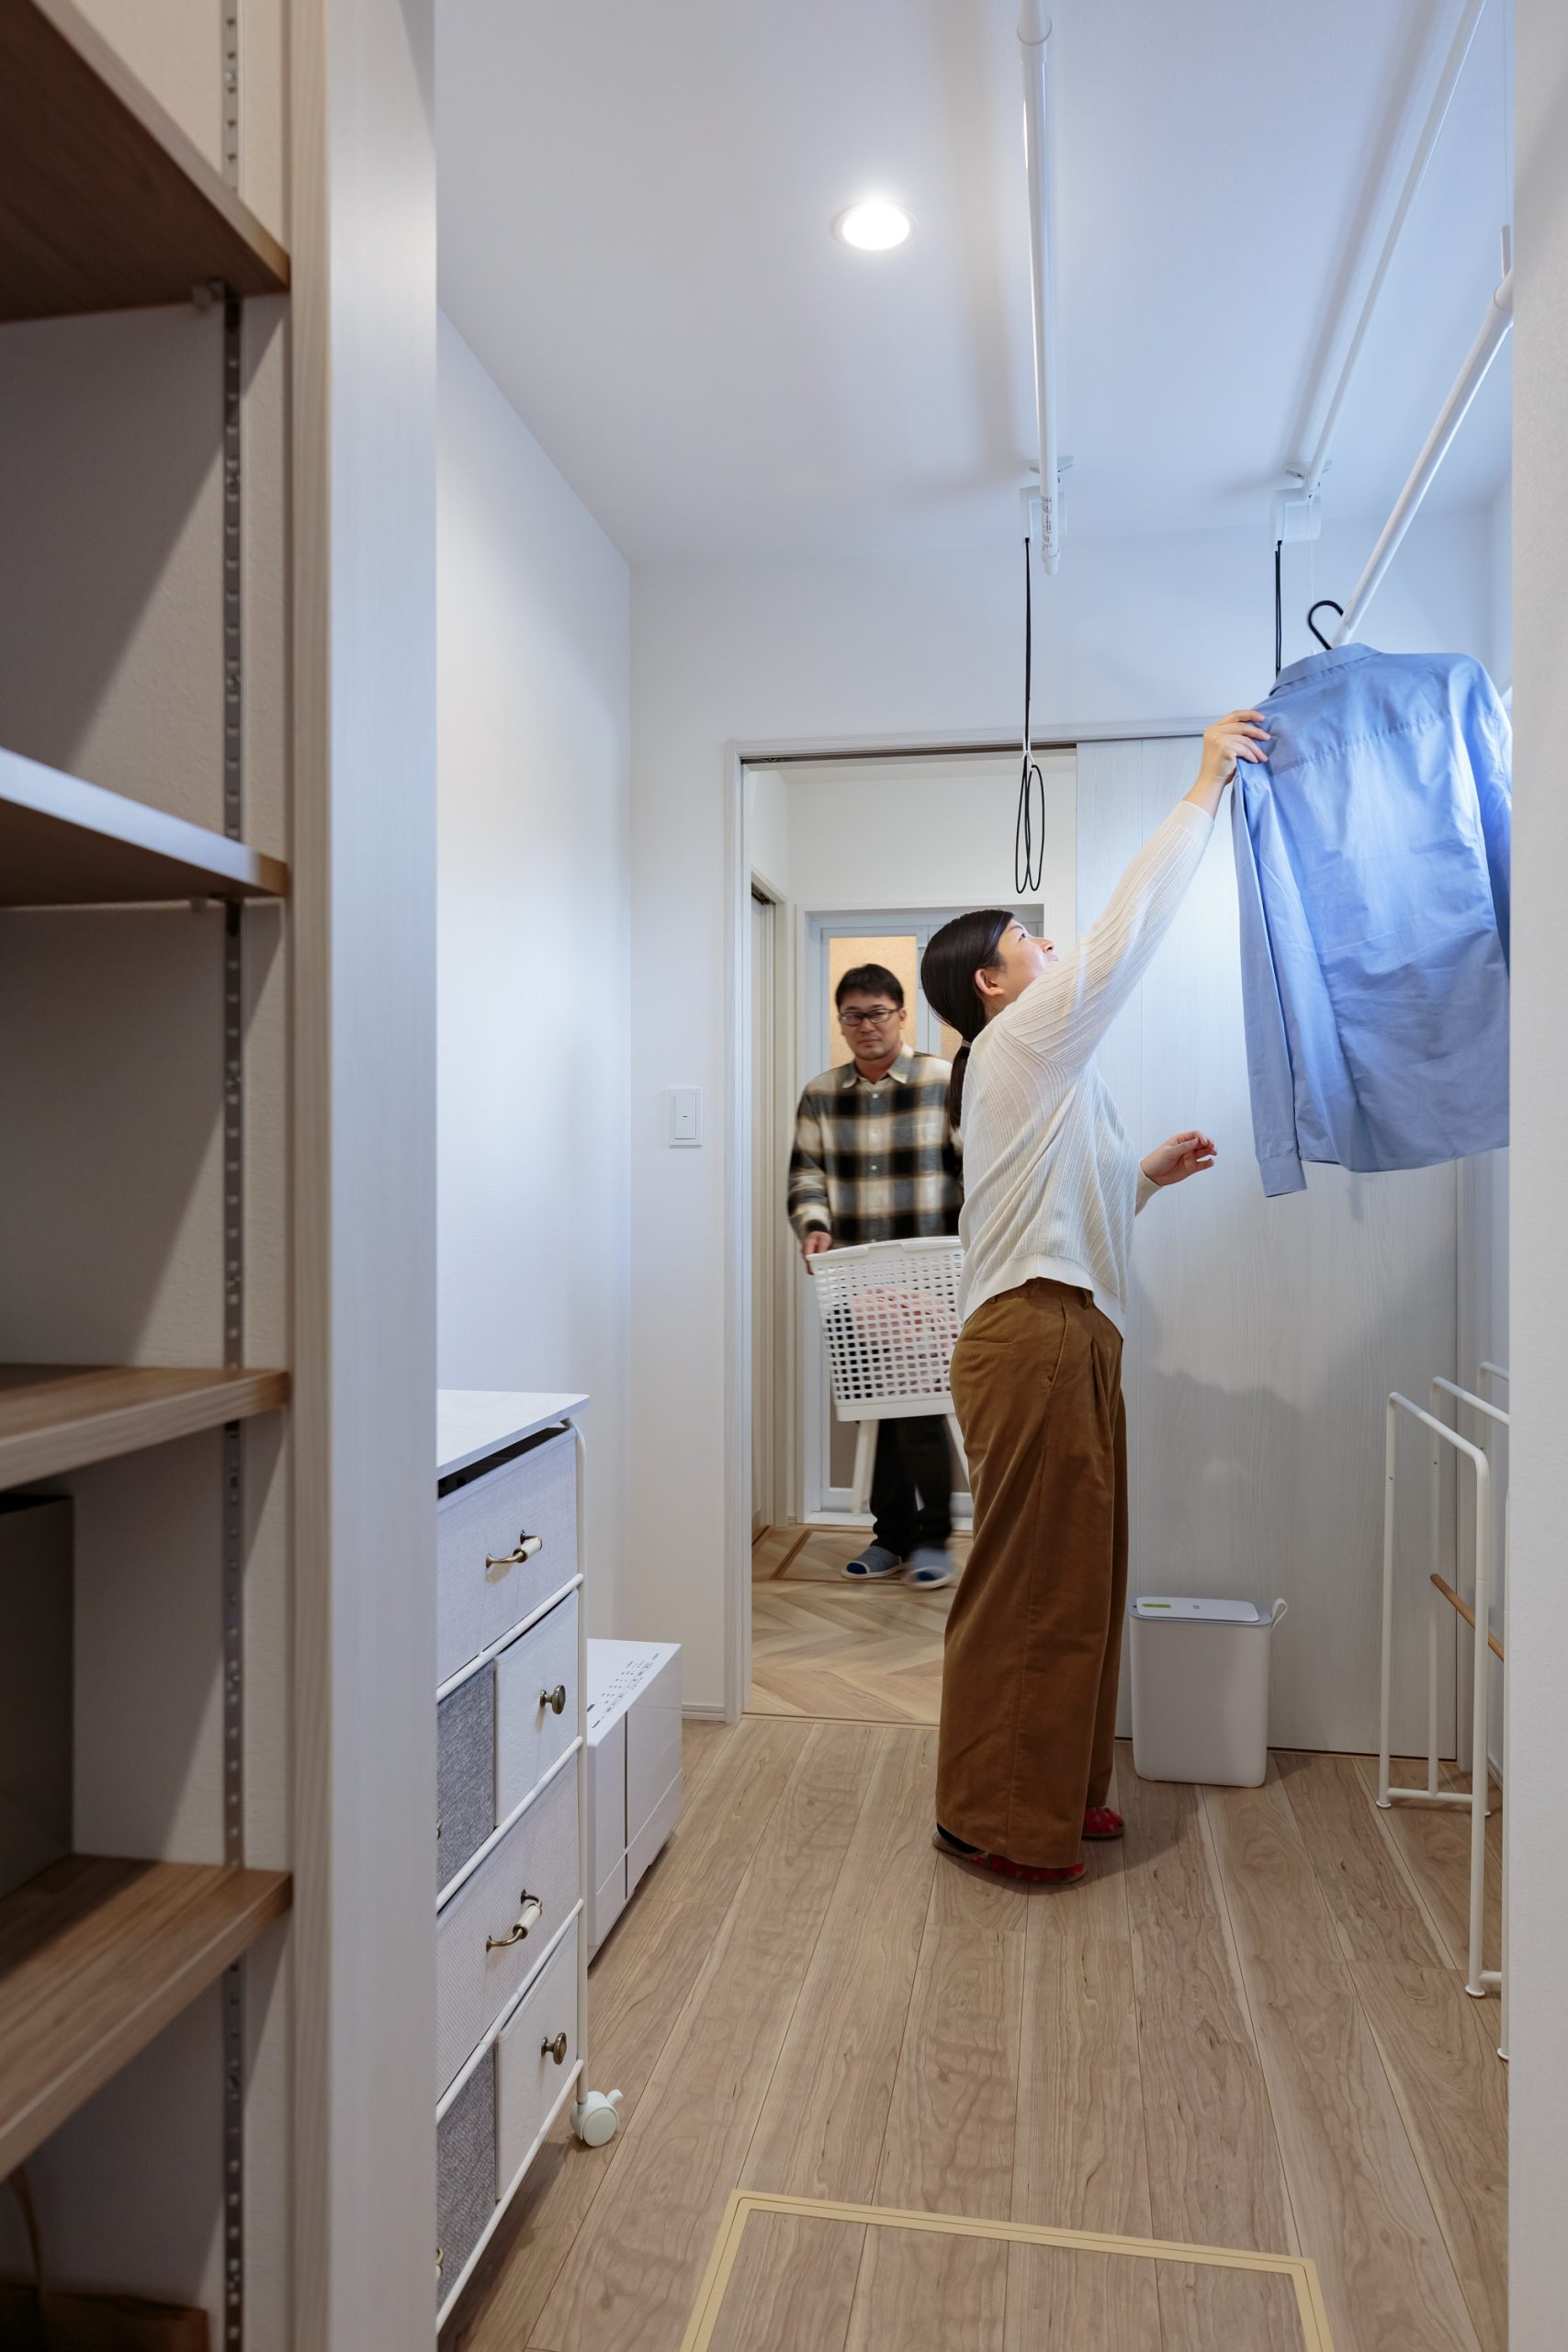 共働きのご夫婦の念願だったランドリールーム。「寝る前に室内干しをしておけば、朝には乾いています。階段にアクセスしやすい位置にあるので、2階のクローゼットまで乾いた服を運ぶのも苦になりません」。